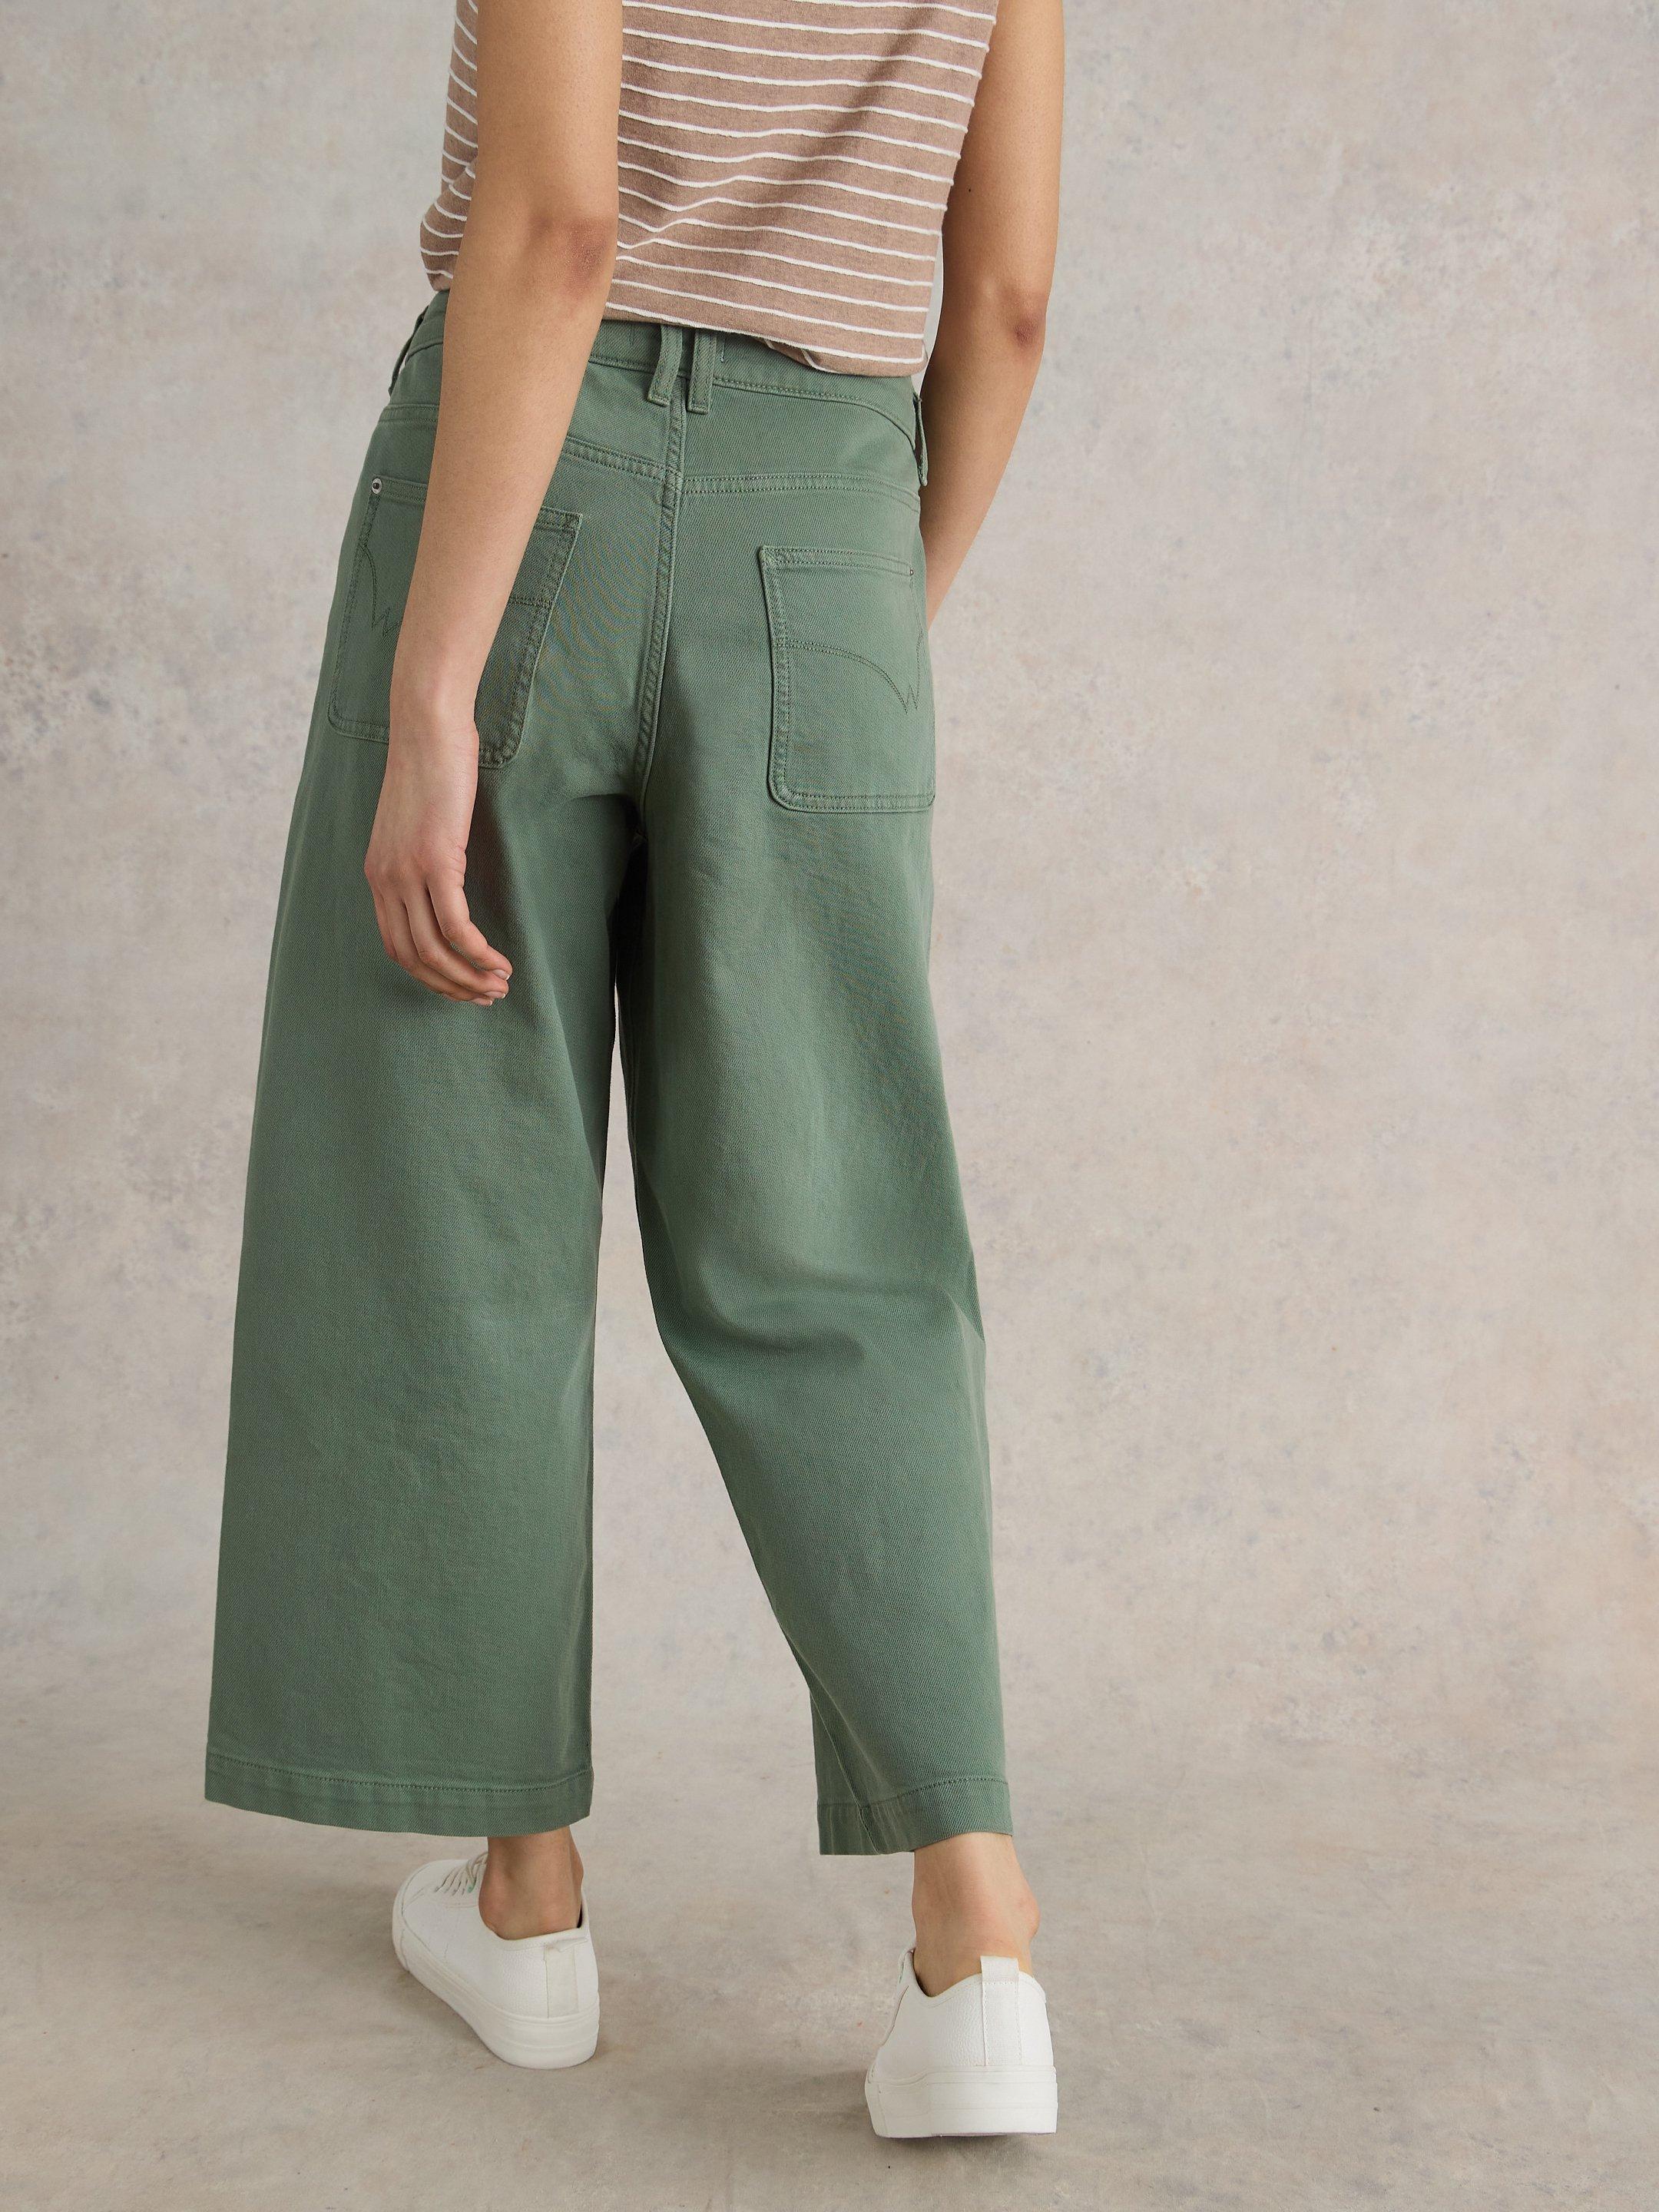 Tia Wide Leg Crop Jean in MID GREEN - MODEL BACK